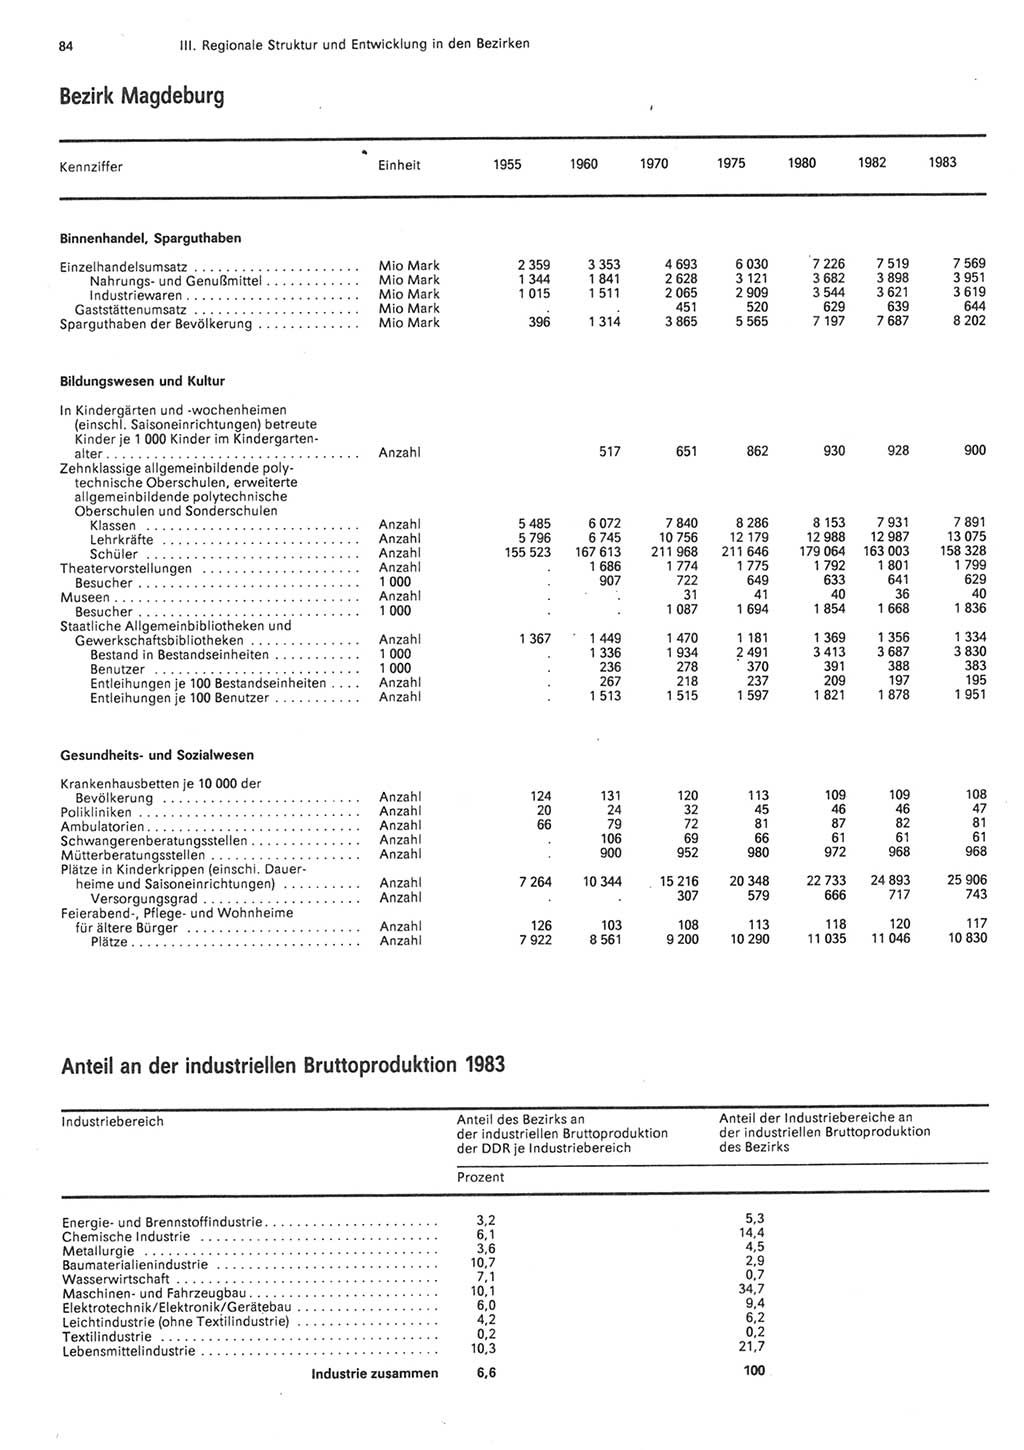 Statistisches Jahrbuch der Deutschen Demokratischen Republik (DDR) 1984, Seite 84 (Stat. Jb. DDR 1984, S. 84)